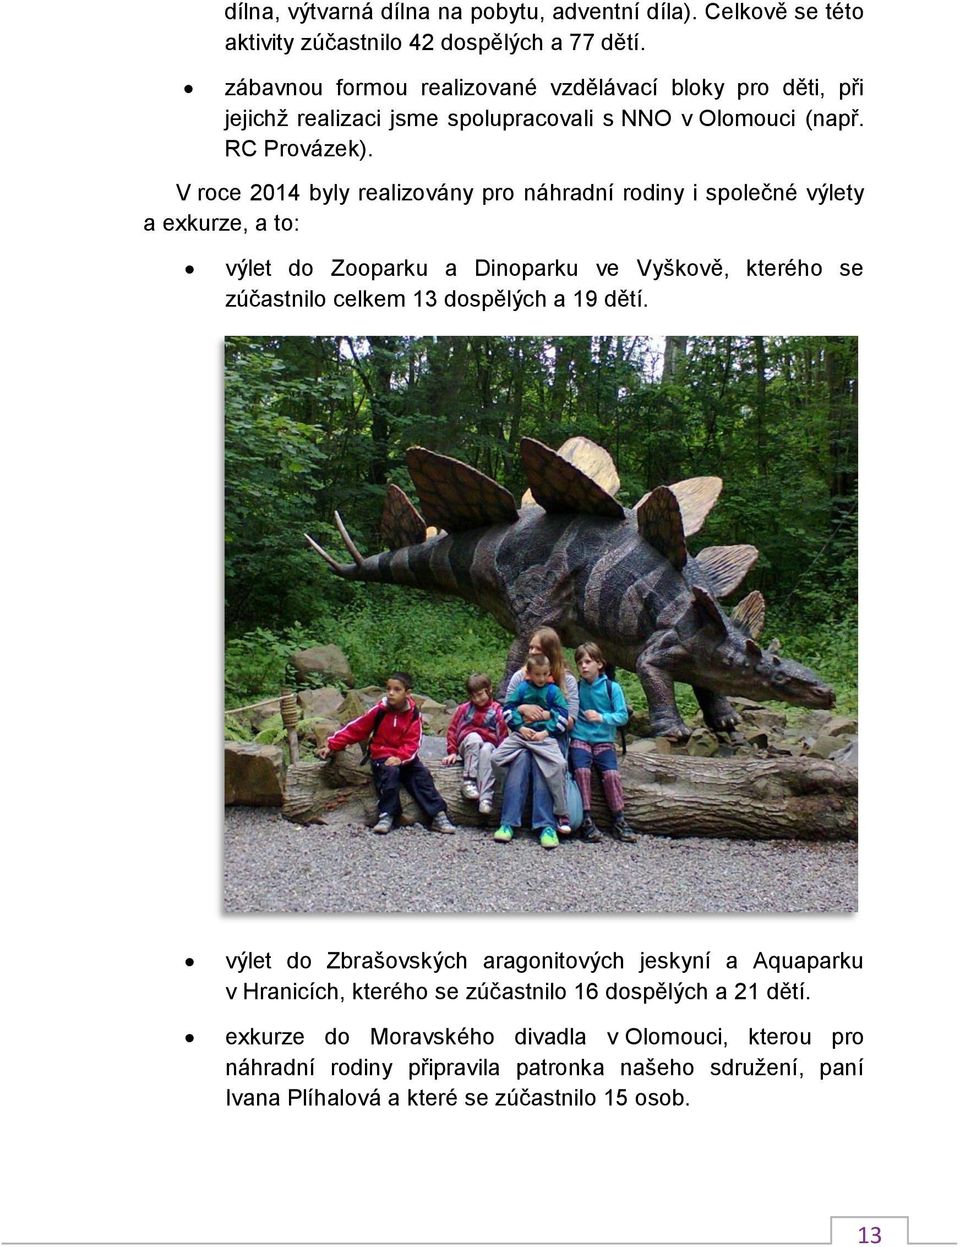 V roce 2014 byly realizovány pro náhradní rodiny i společné výlety a exkurze, a to: výlet do Zooparku a Dinoparku ve Vyškově, kterého se zúčastnilo celkem 13 dospělých a 19